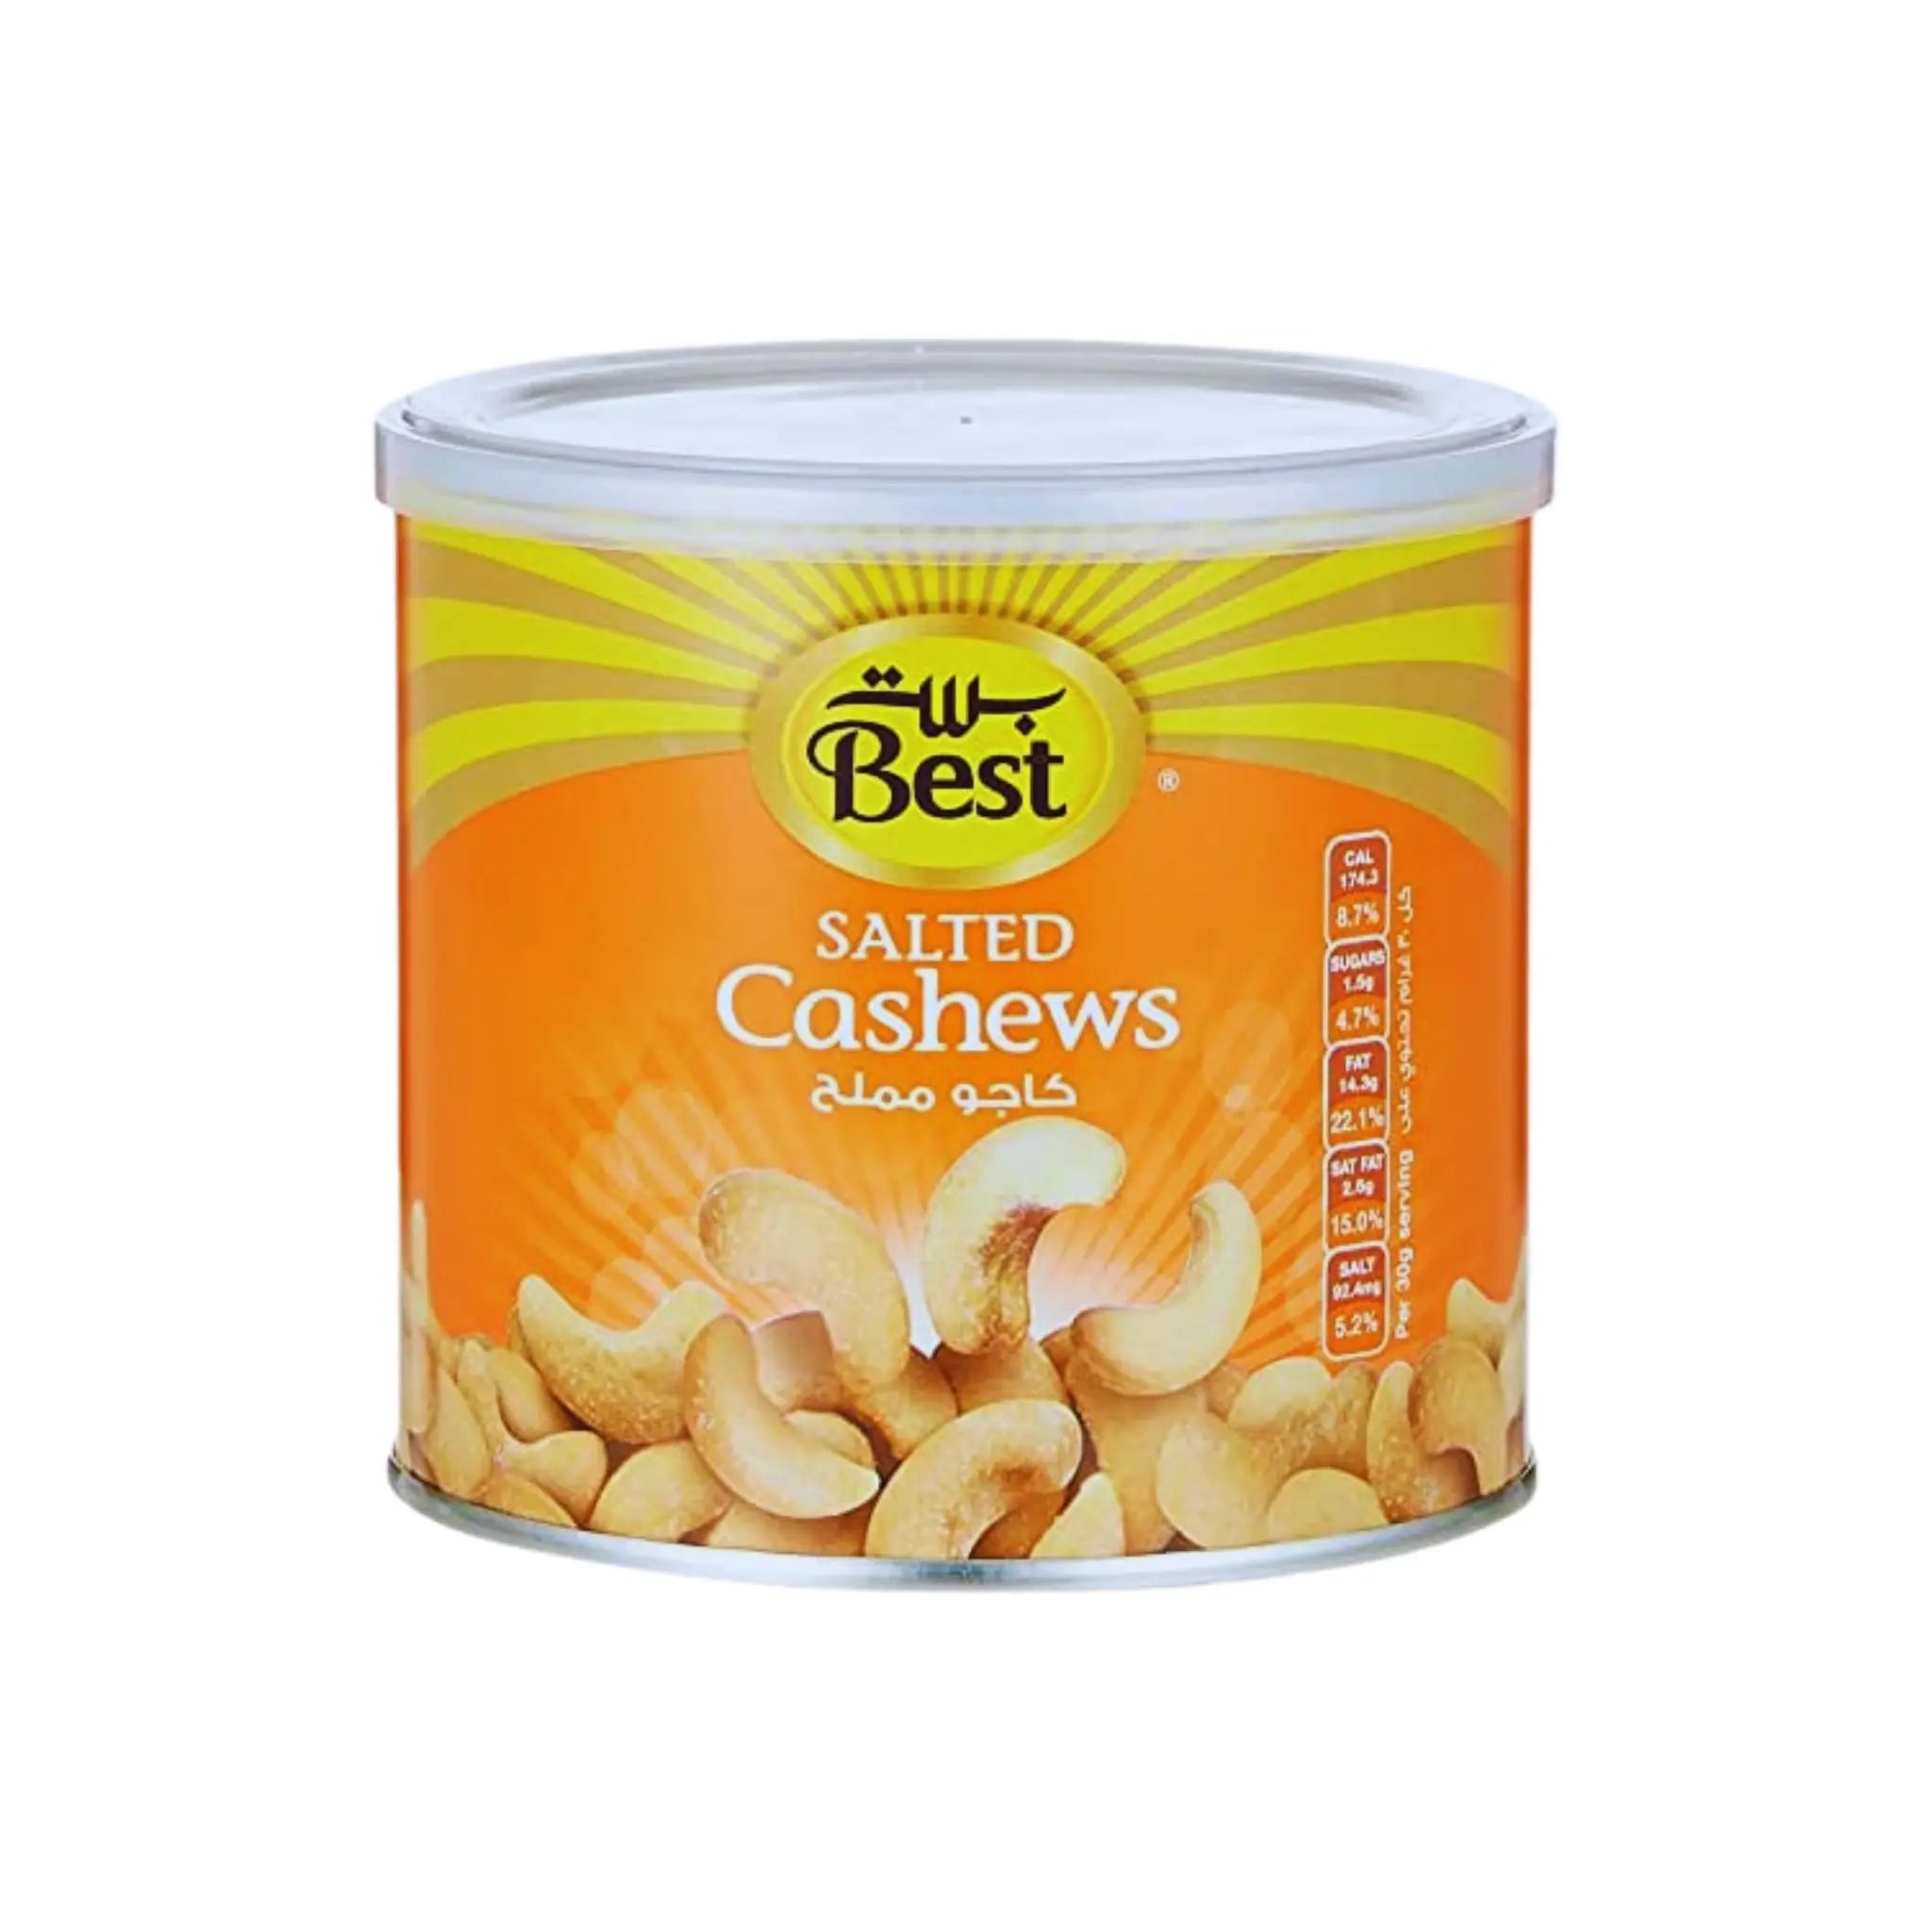 Best Salted Cashews - 12x275g (1 carton) - Marino.AE